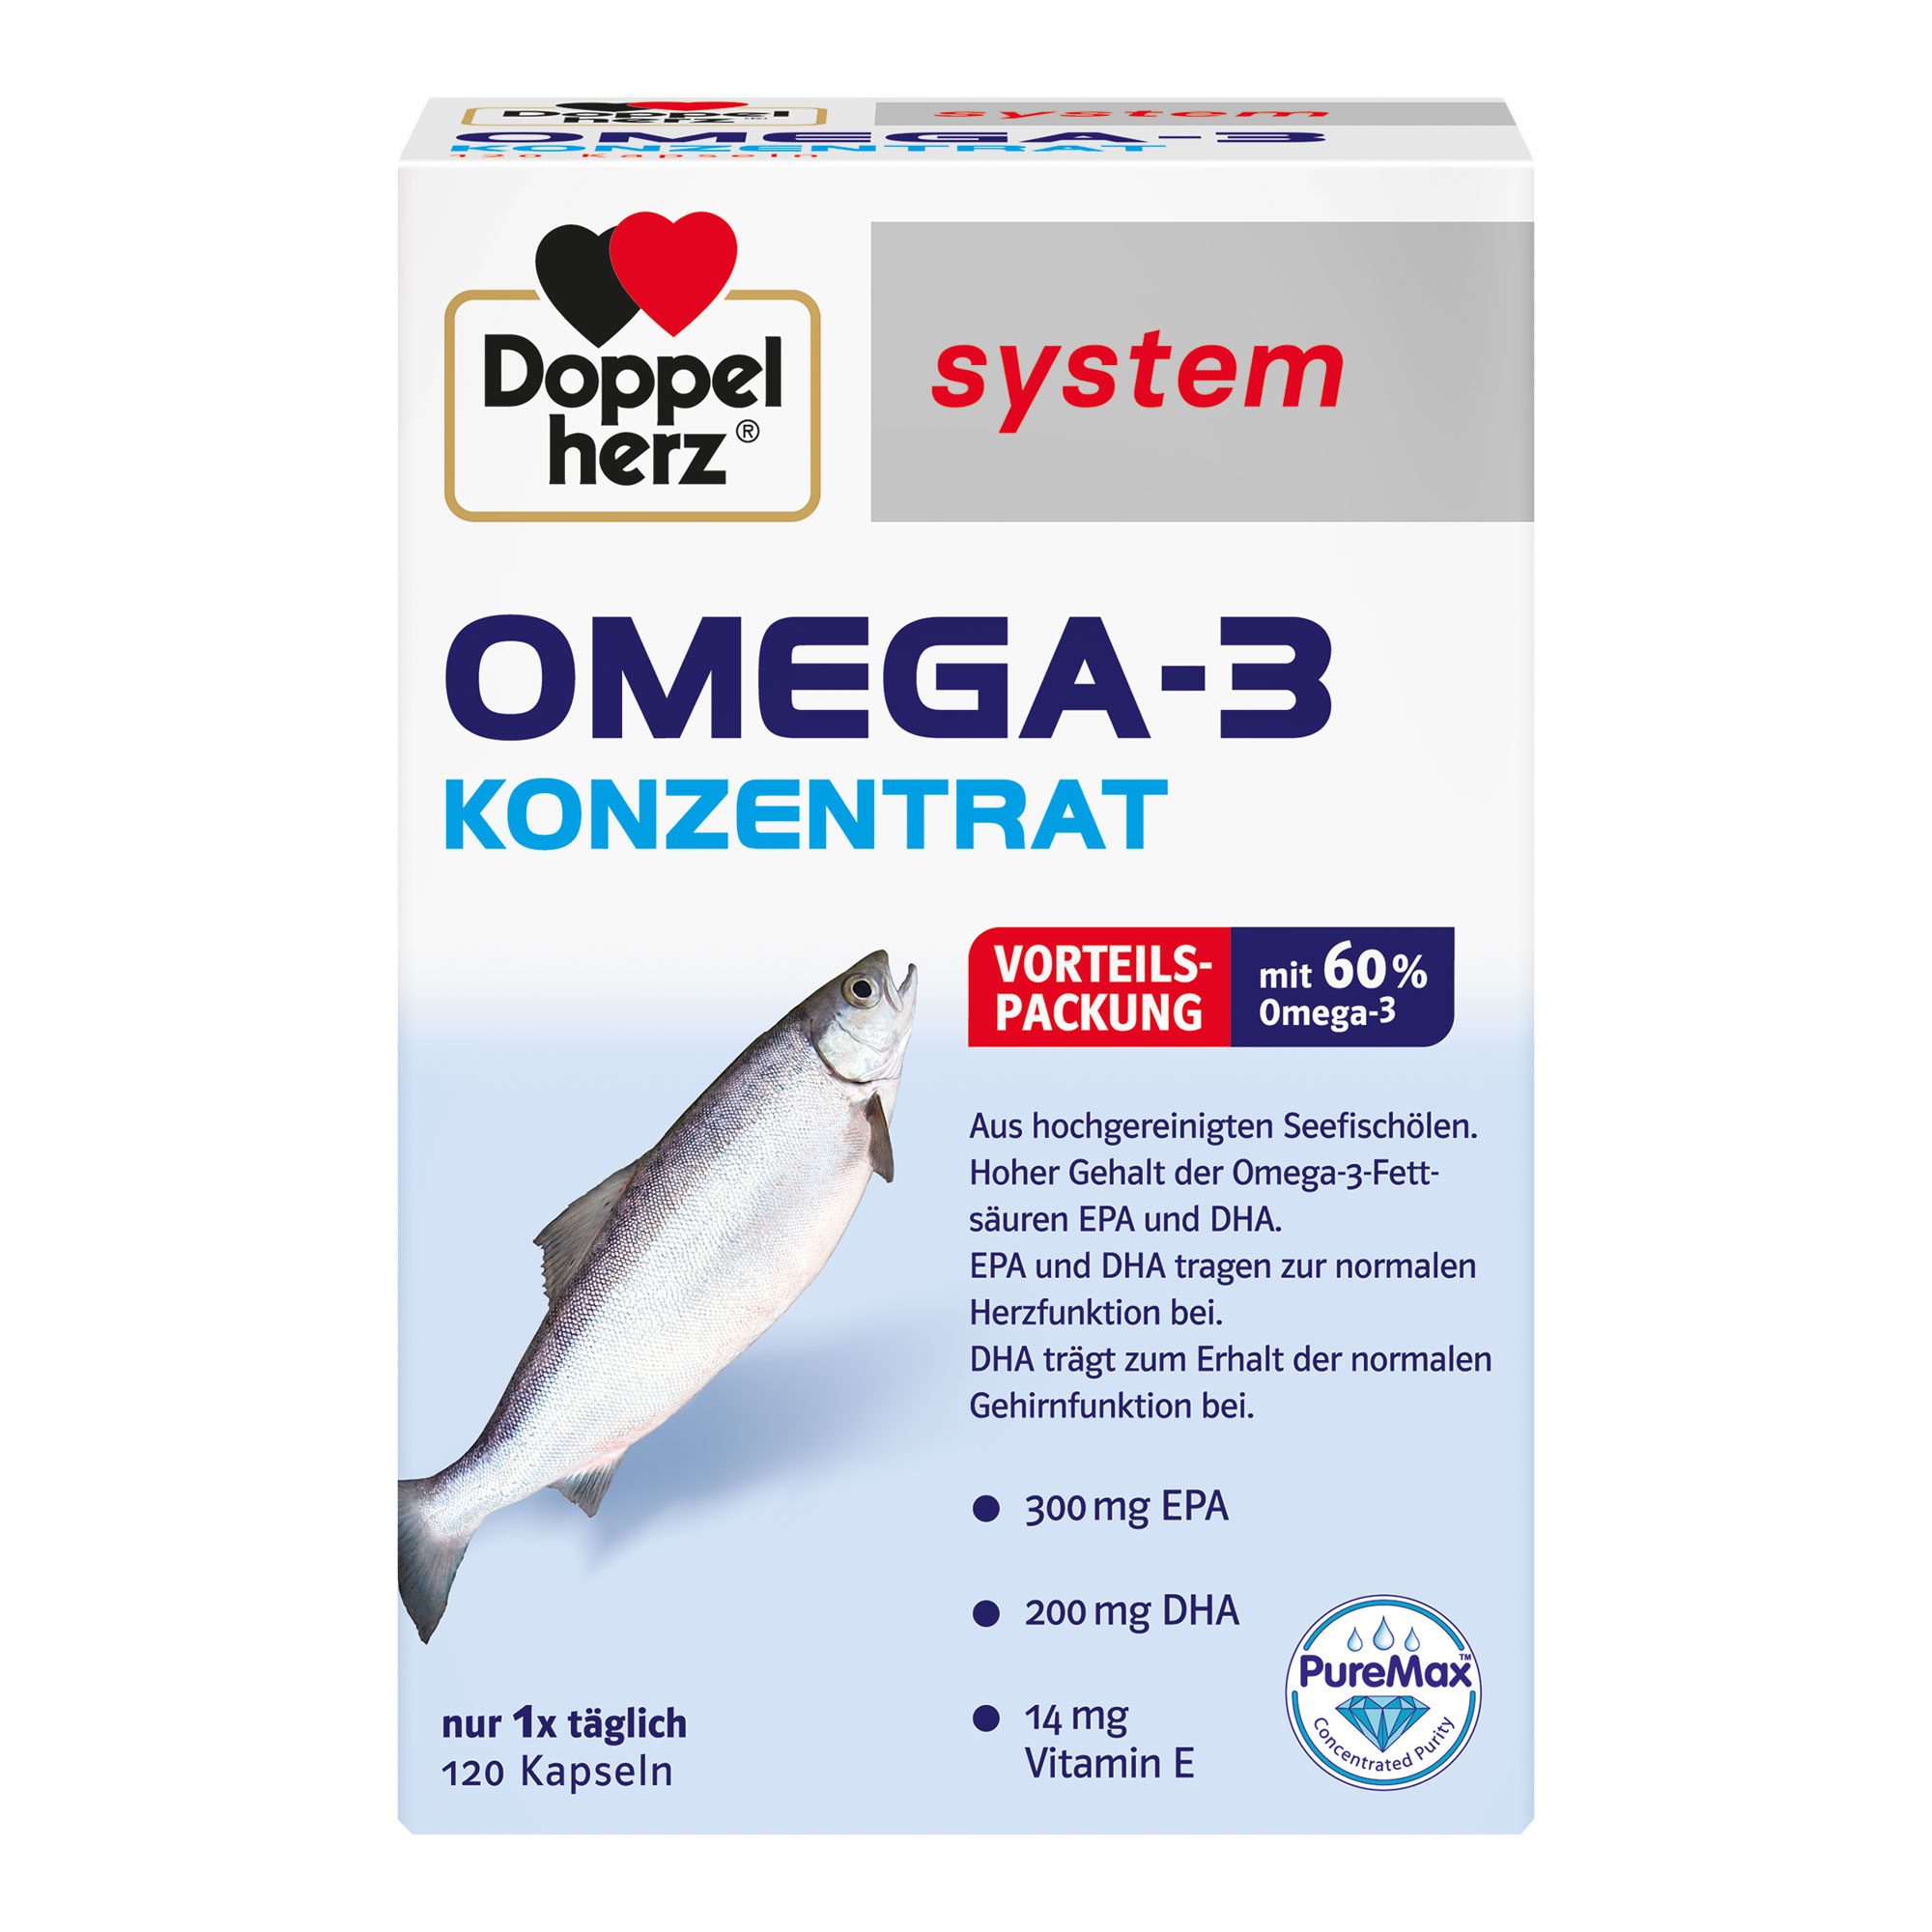 Nahrungsergänzungsmittek mit Omega-3 Konzentrat aus Seefischölen und Vitamin E.